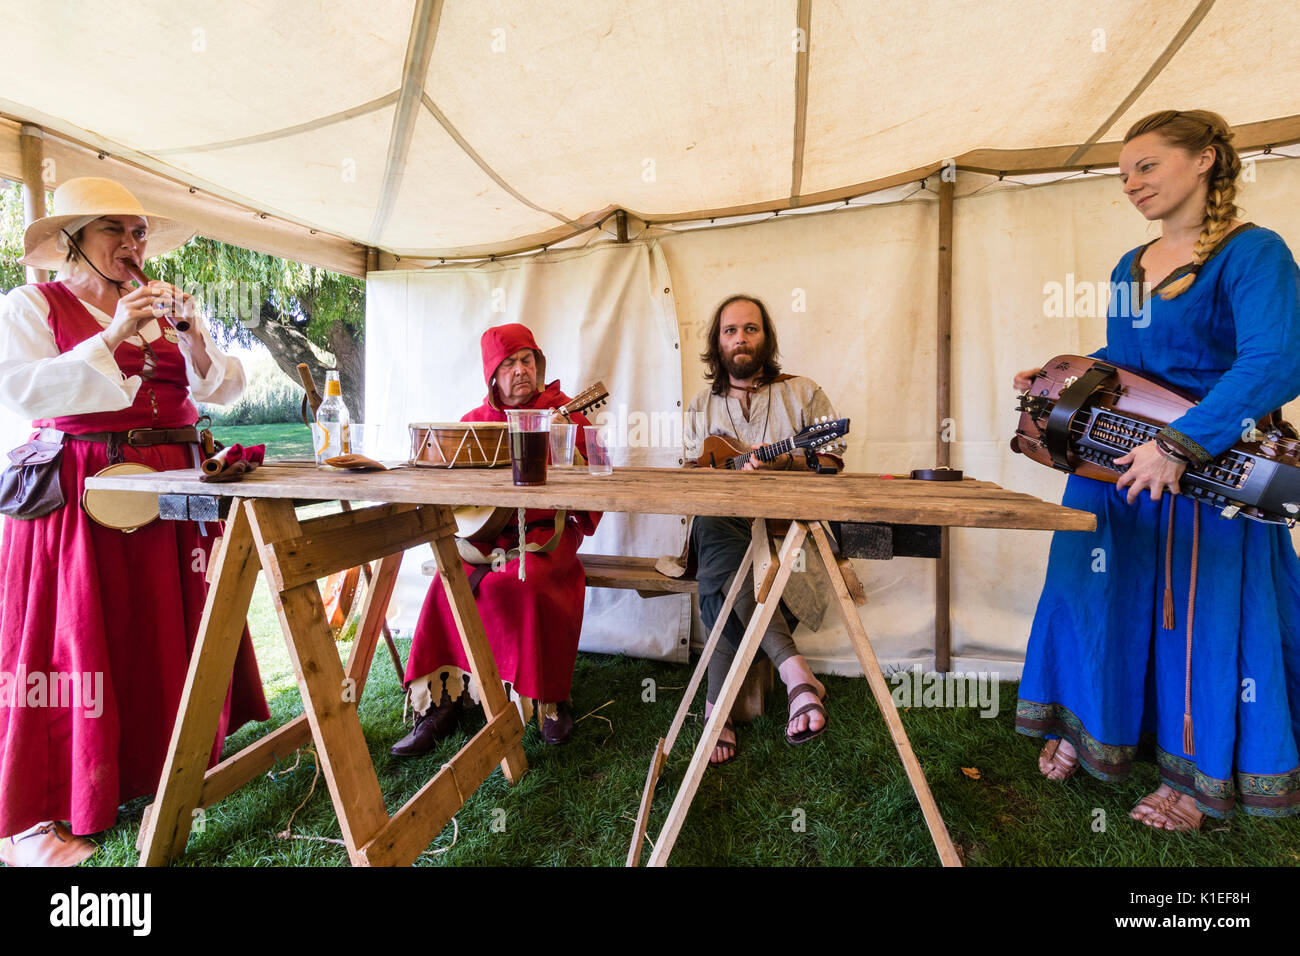 England, Sandwich. Mittelalterliche band der Spielleute spielen verschiedene Arten von mittelalterlichen Musikinstrumente um hölzernen Tisch in einem Zelt. Stockfoto